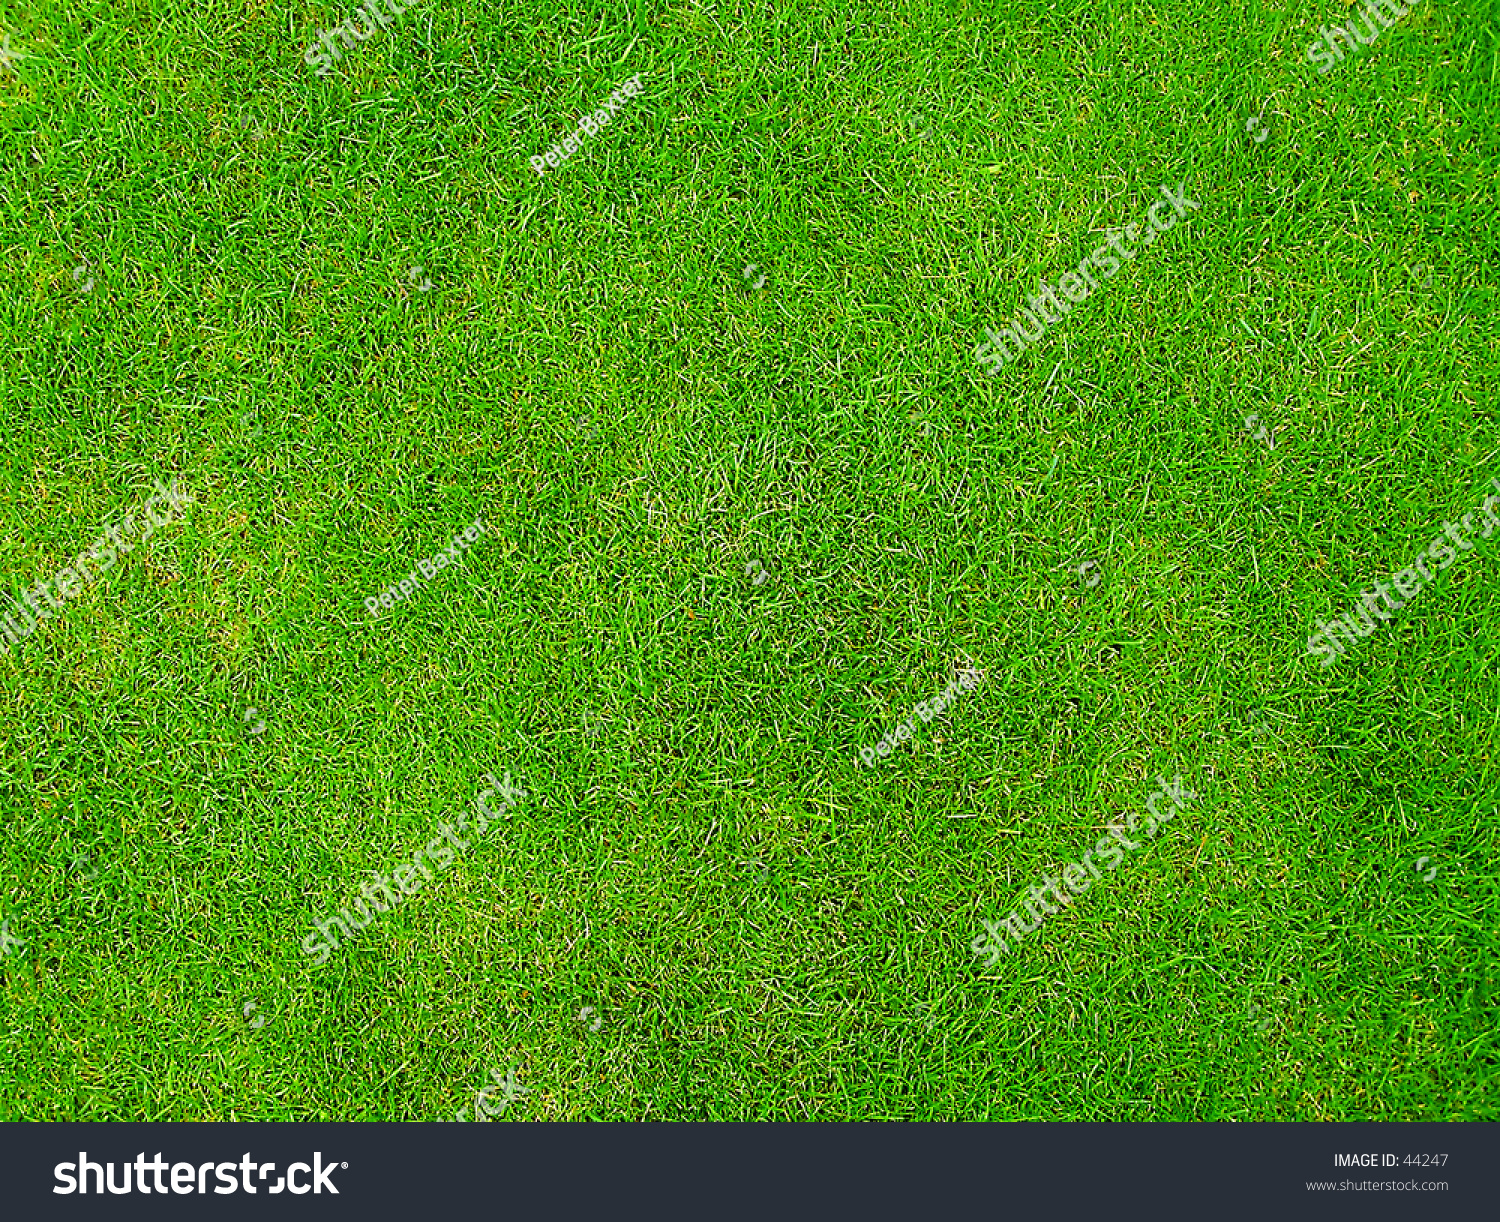 Emerald Grass Stock Photo 44247 - Shutterstock